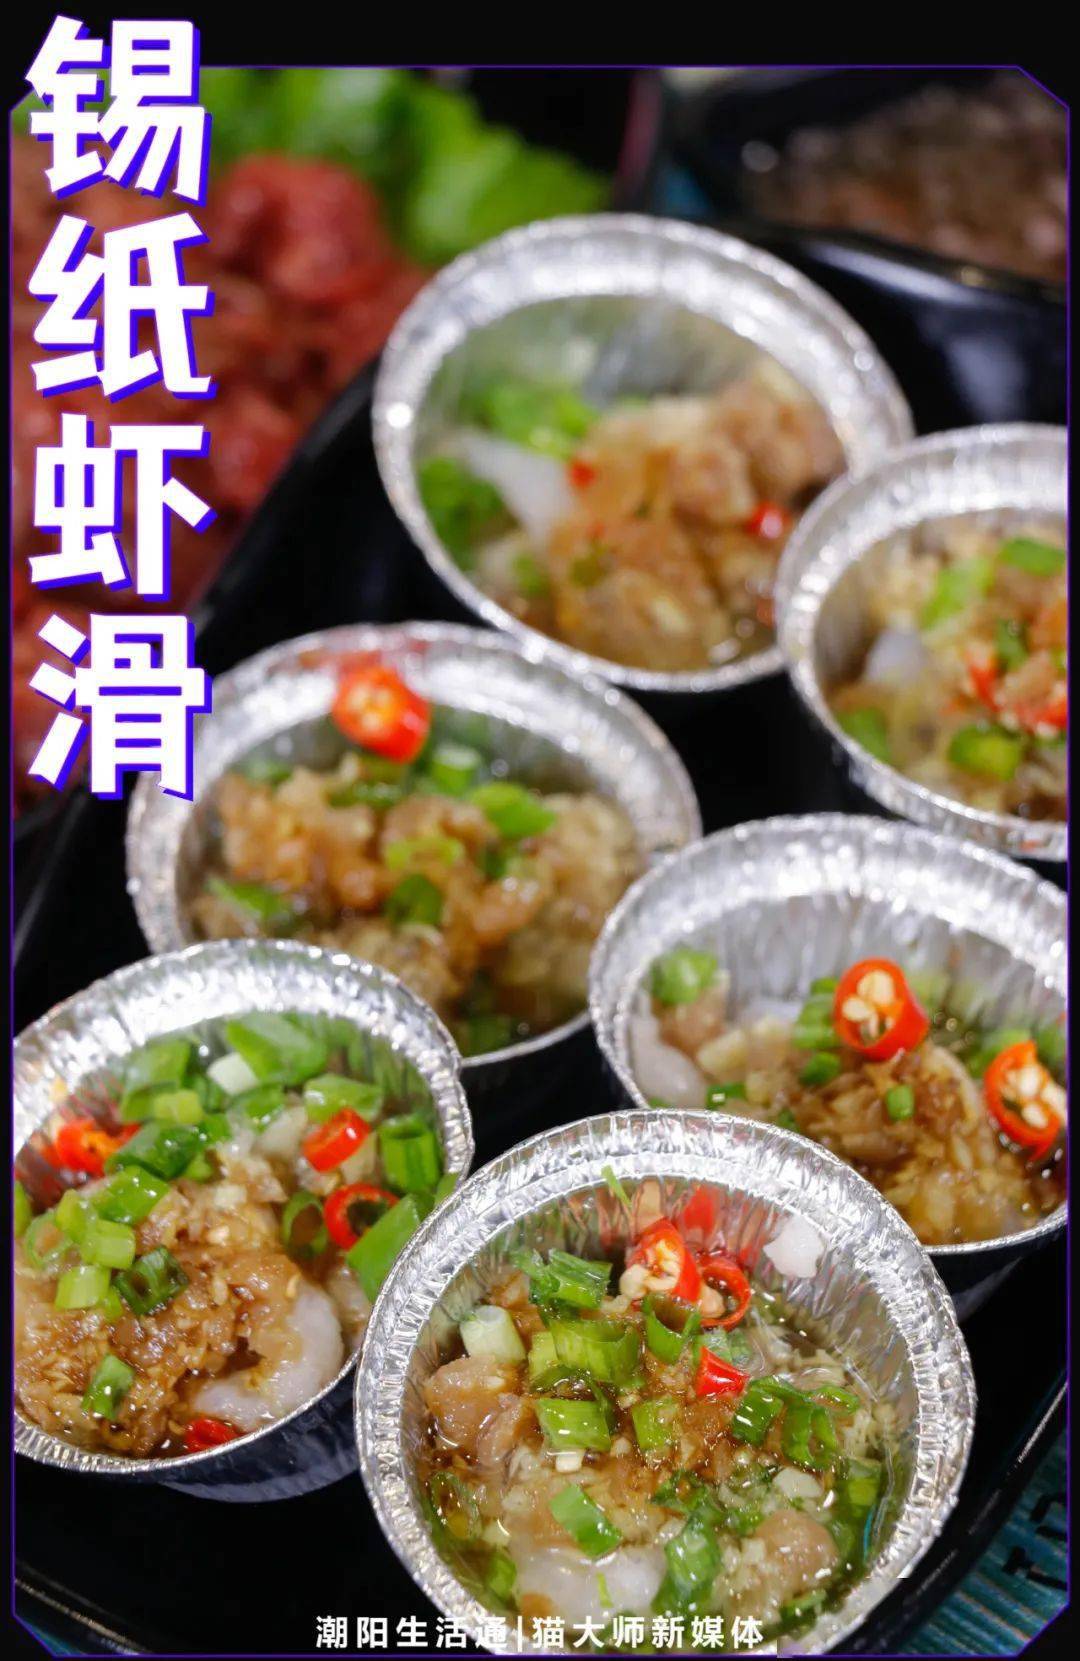 虾滑搭配蒜蓉菜脯是潮汕人的吃法没错了!